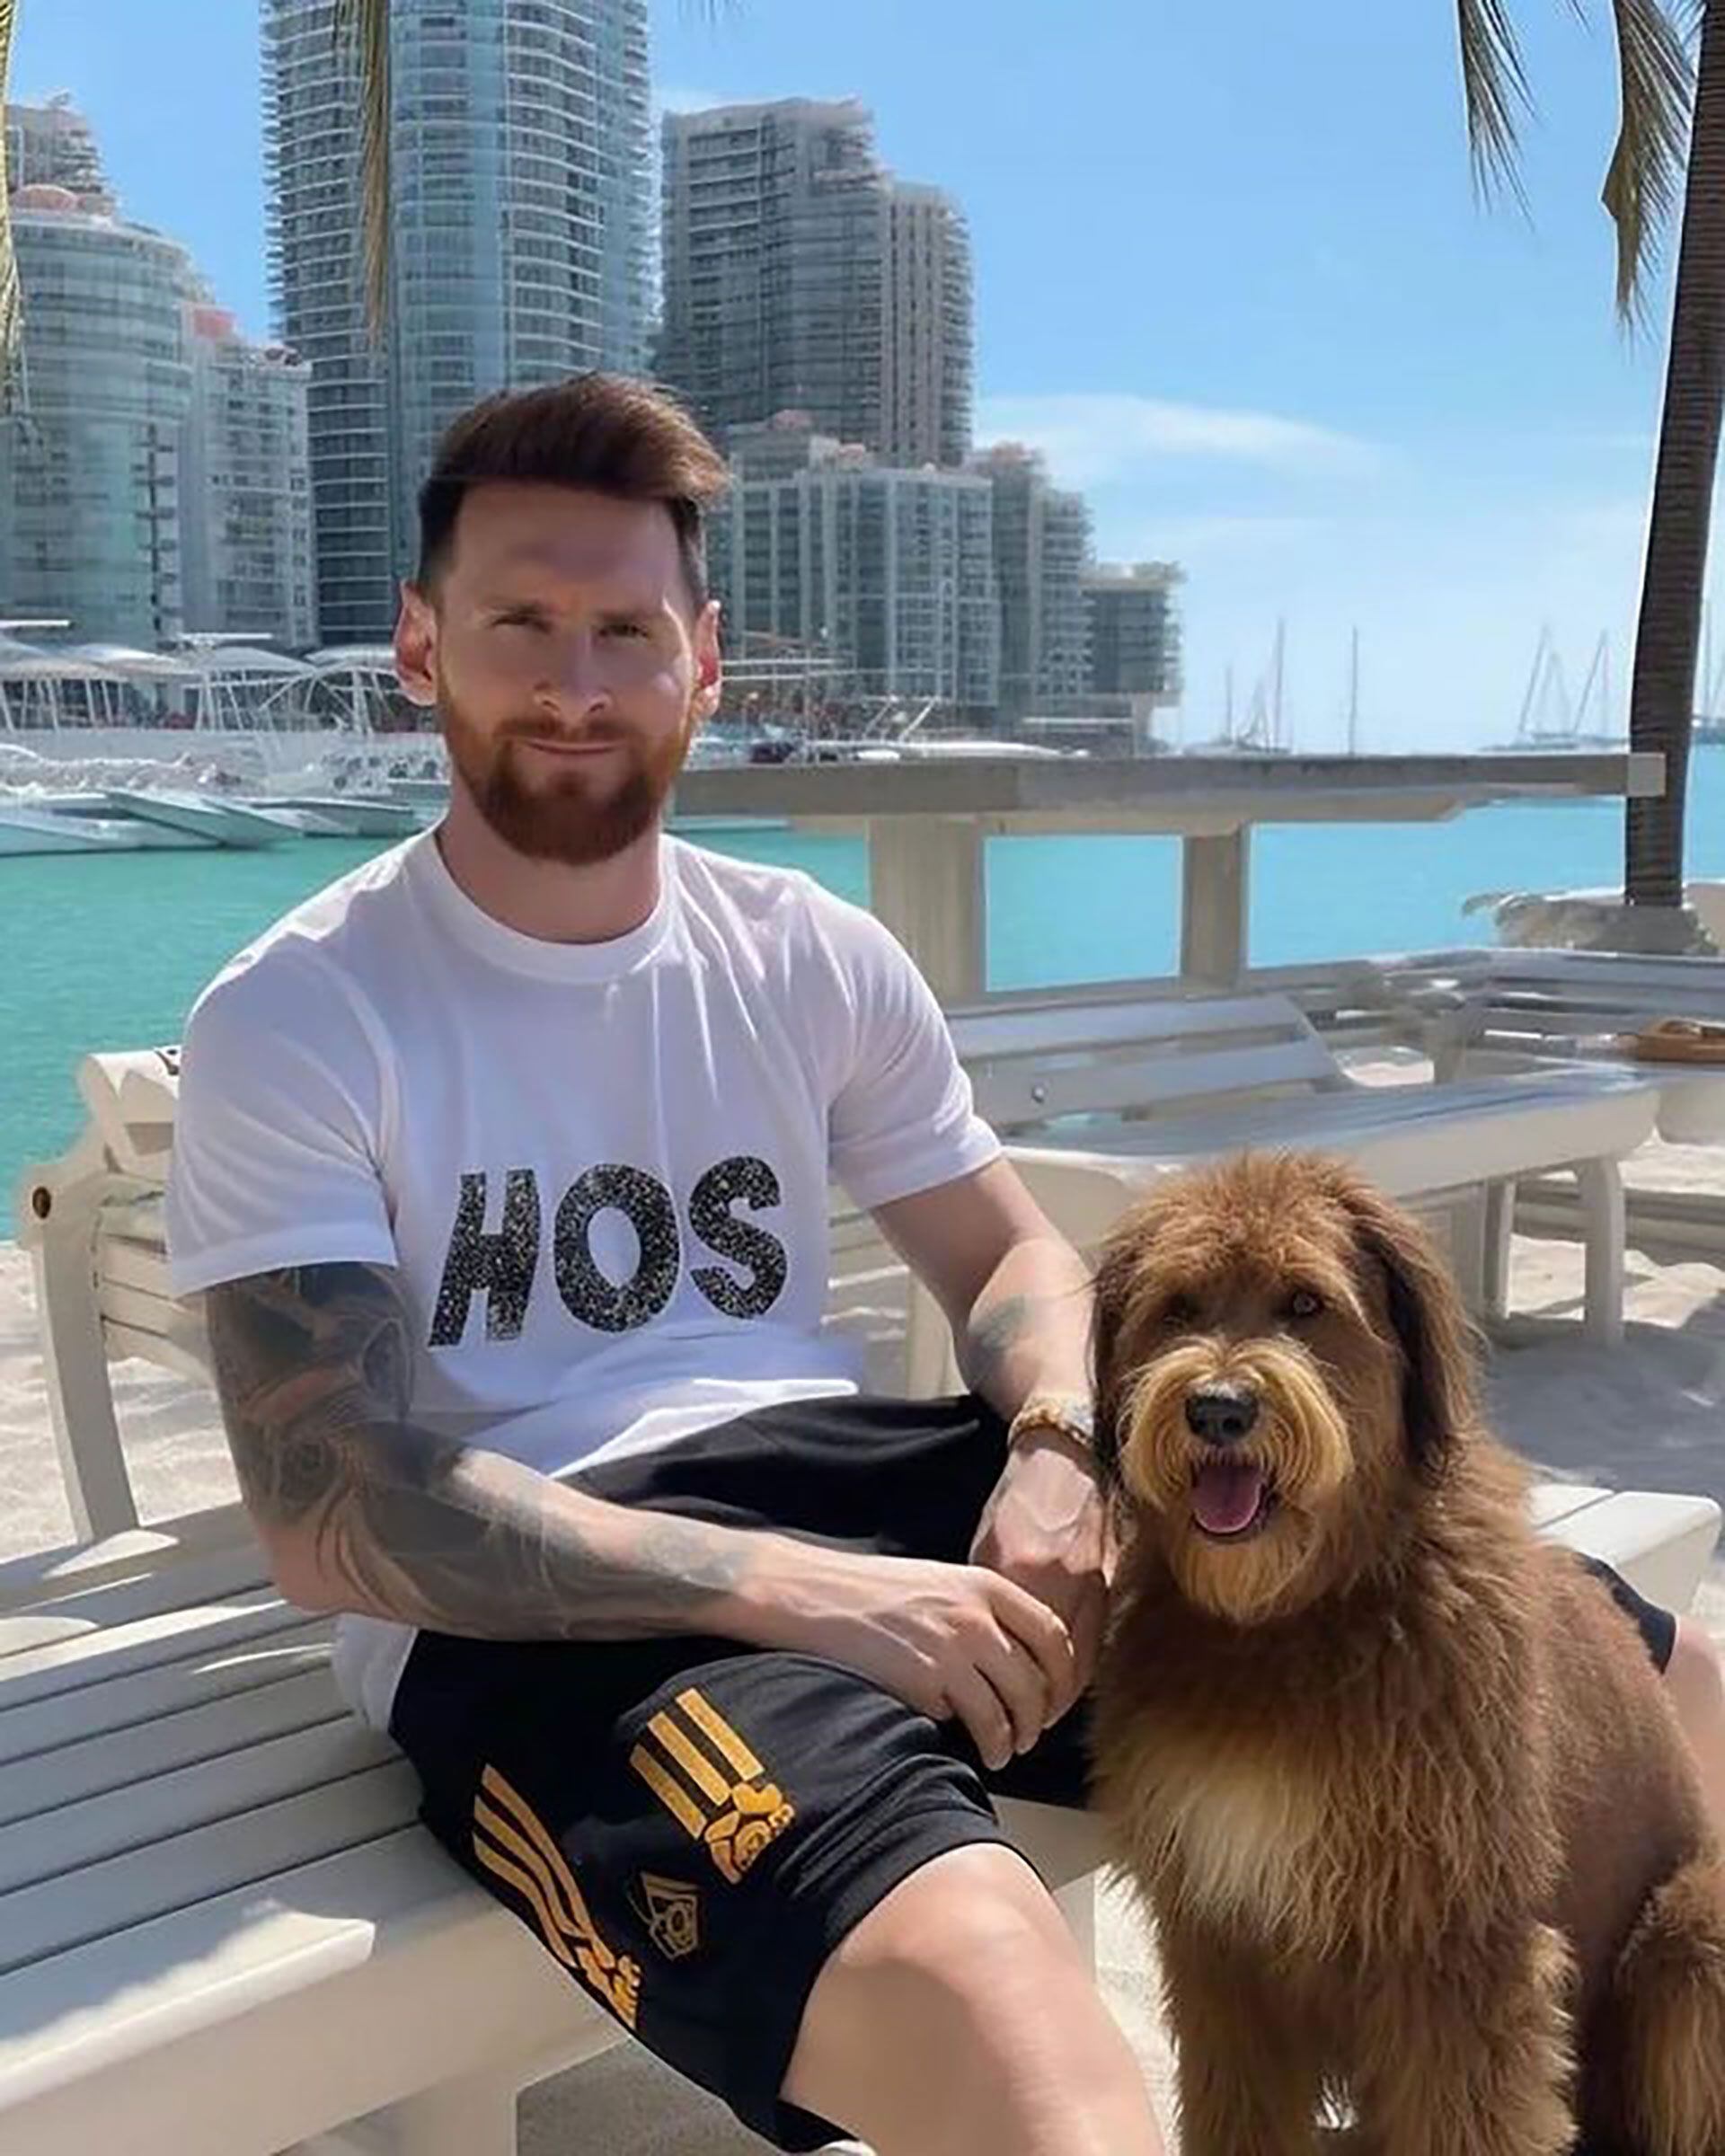 Las fotos hasta recrearon a Messi junto a una tierna mascota (Instagram: @chatgptricks)